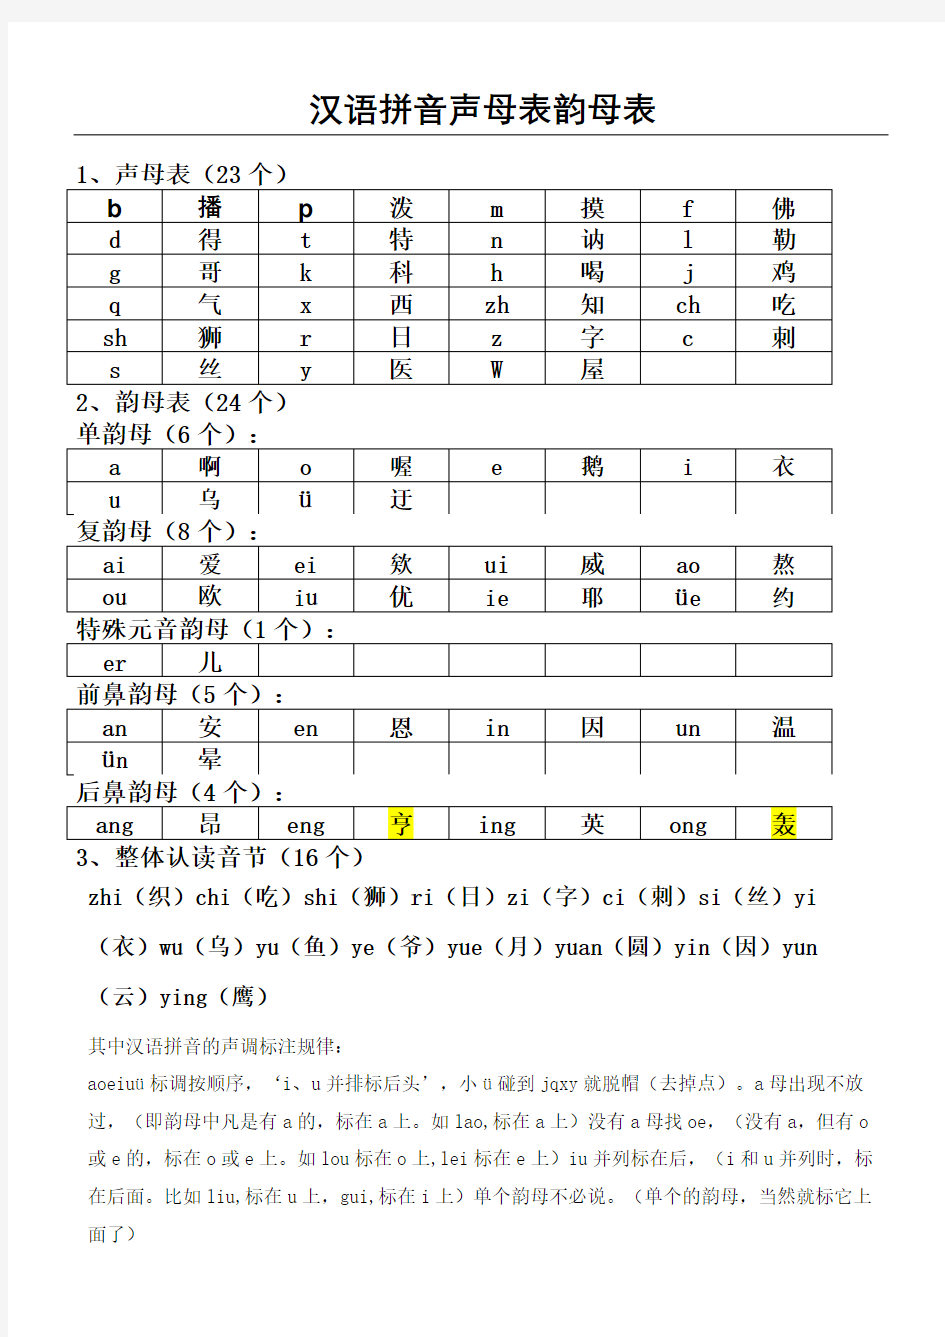 汉语拼音声母韵母全表格完整版